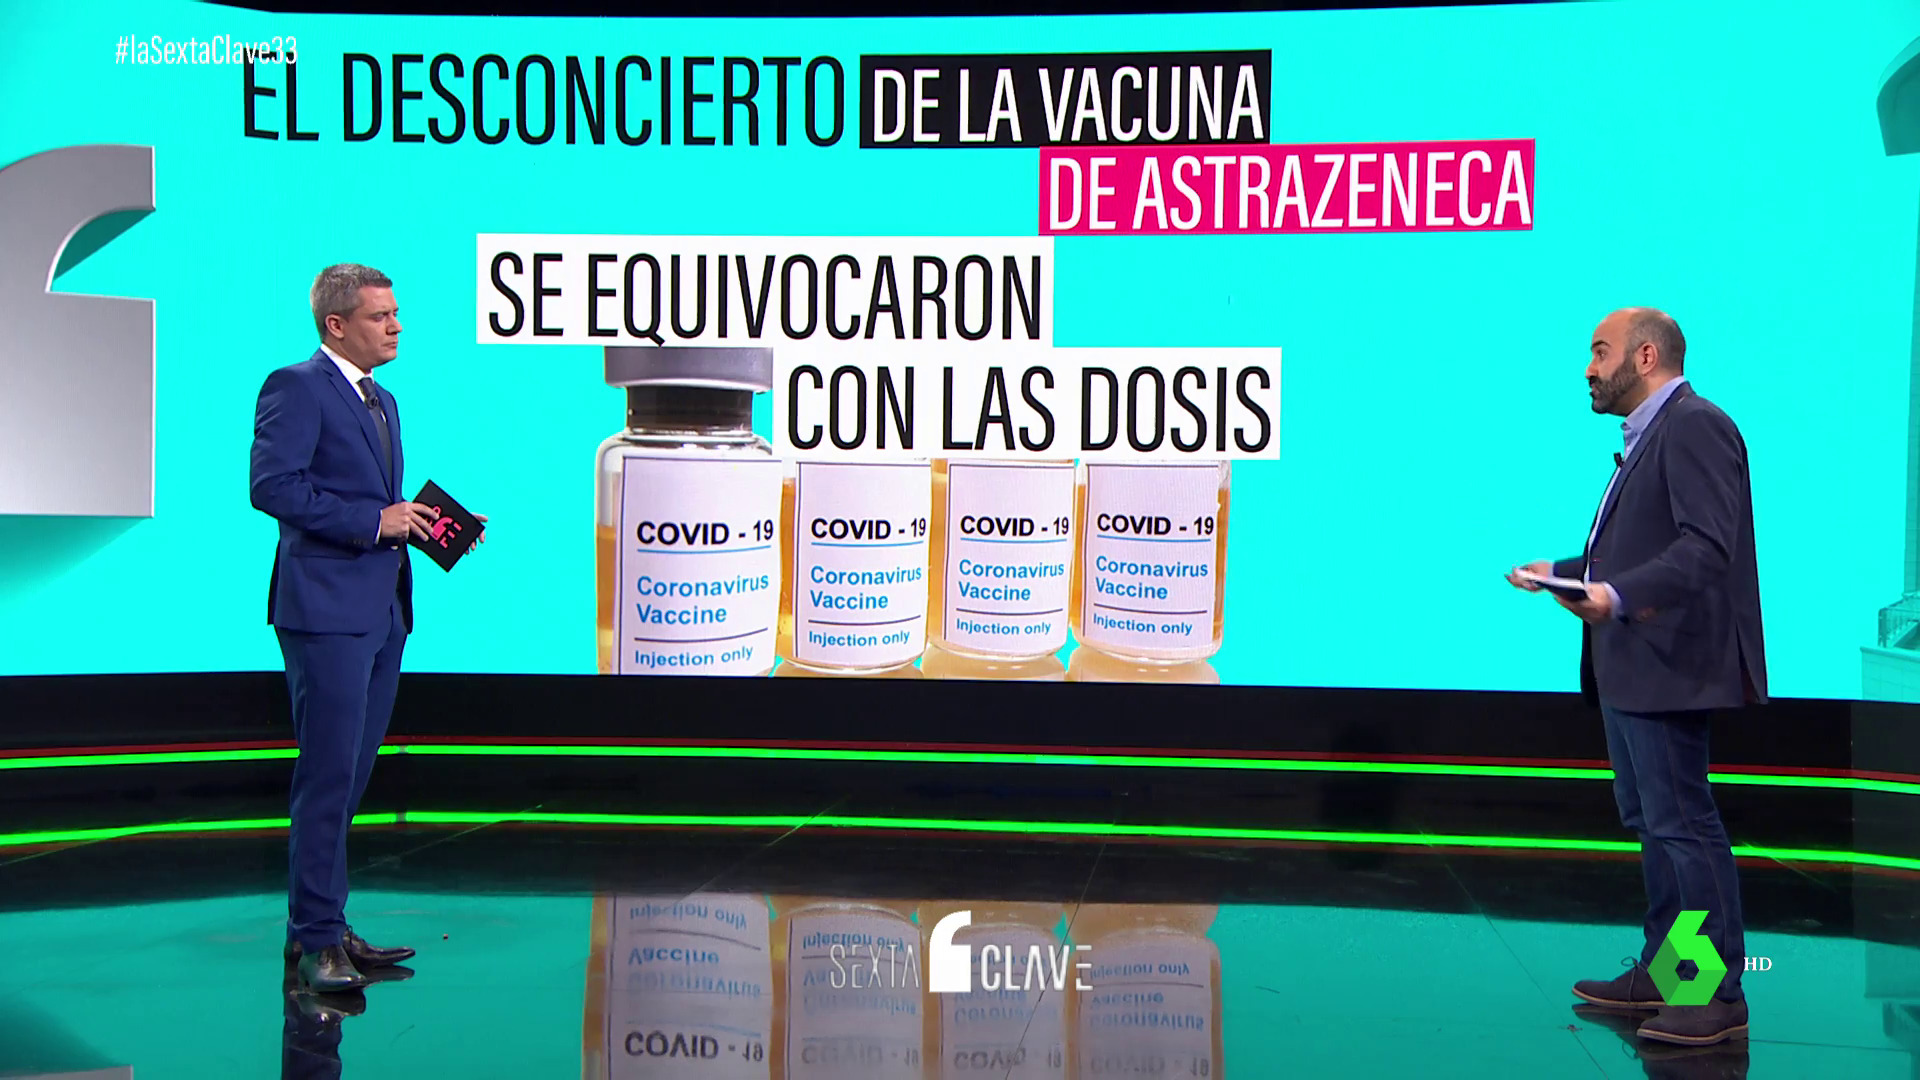 Noviembre 2020 (27-11-20) El desconcierto de la vacuna de Astrazeneca